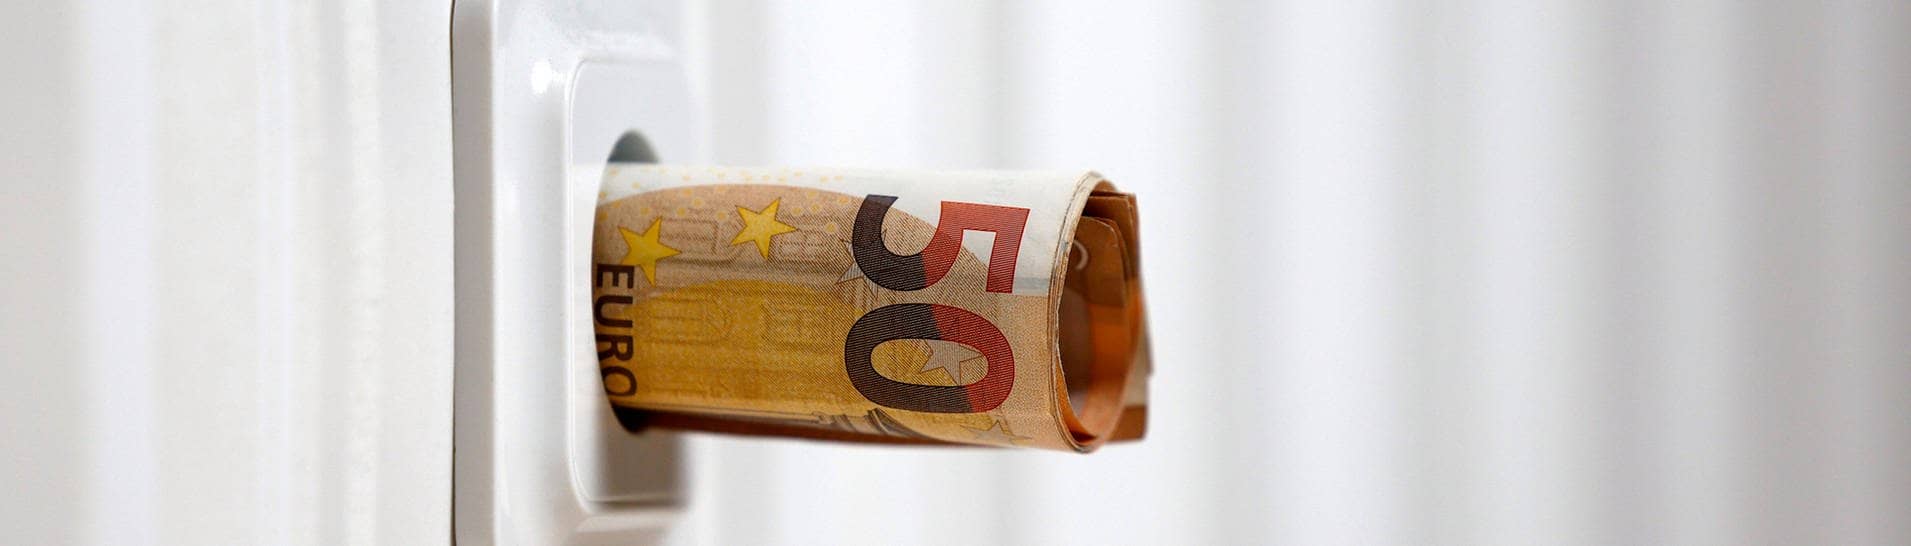 Symbolbild für die Energiekrise: Zusammengerollte Geldscheine ragen aus einer Steckdose. 